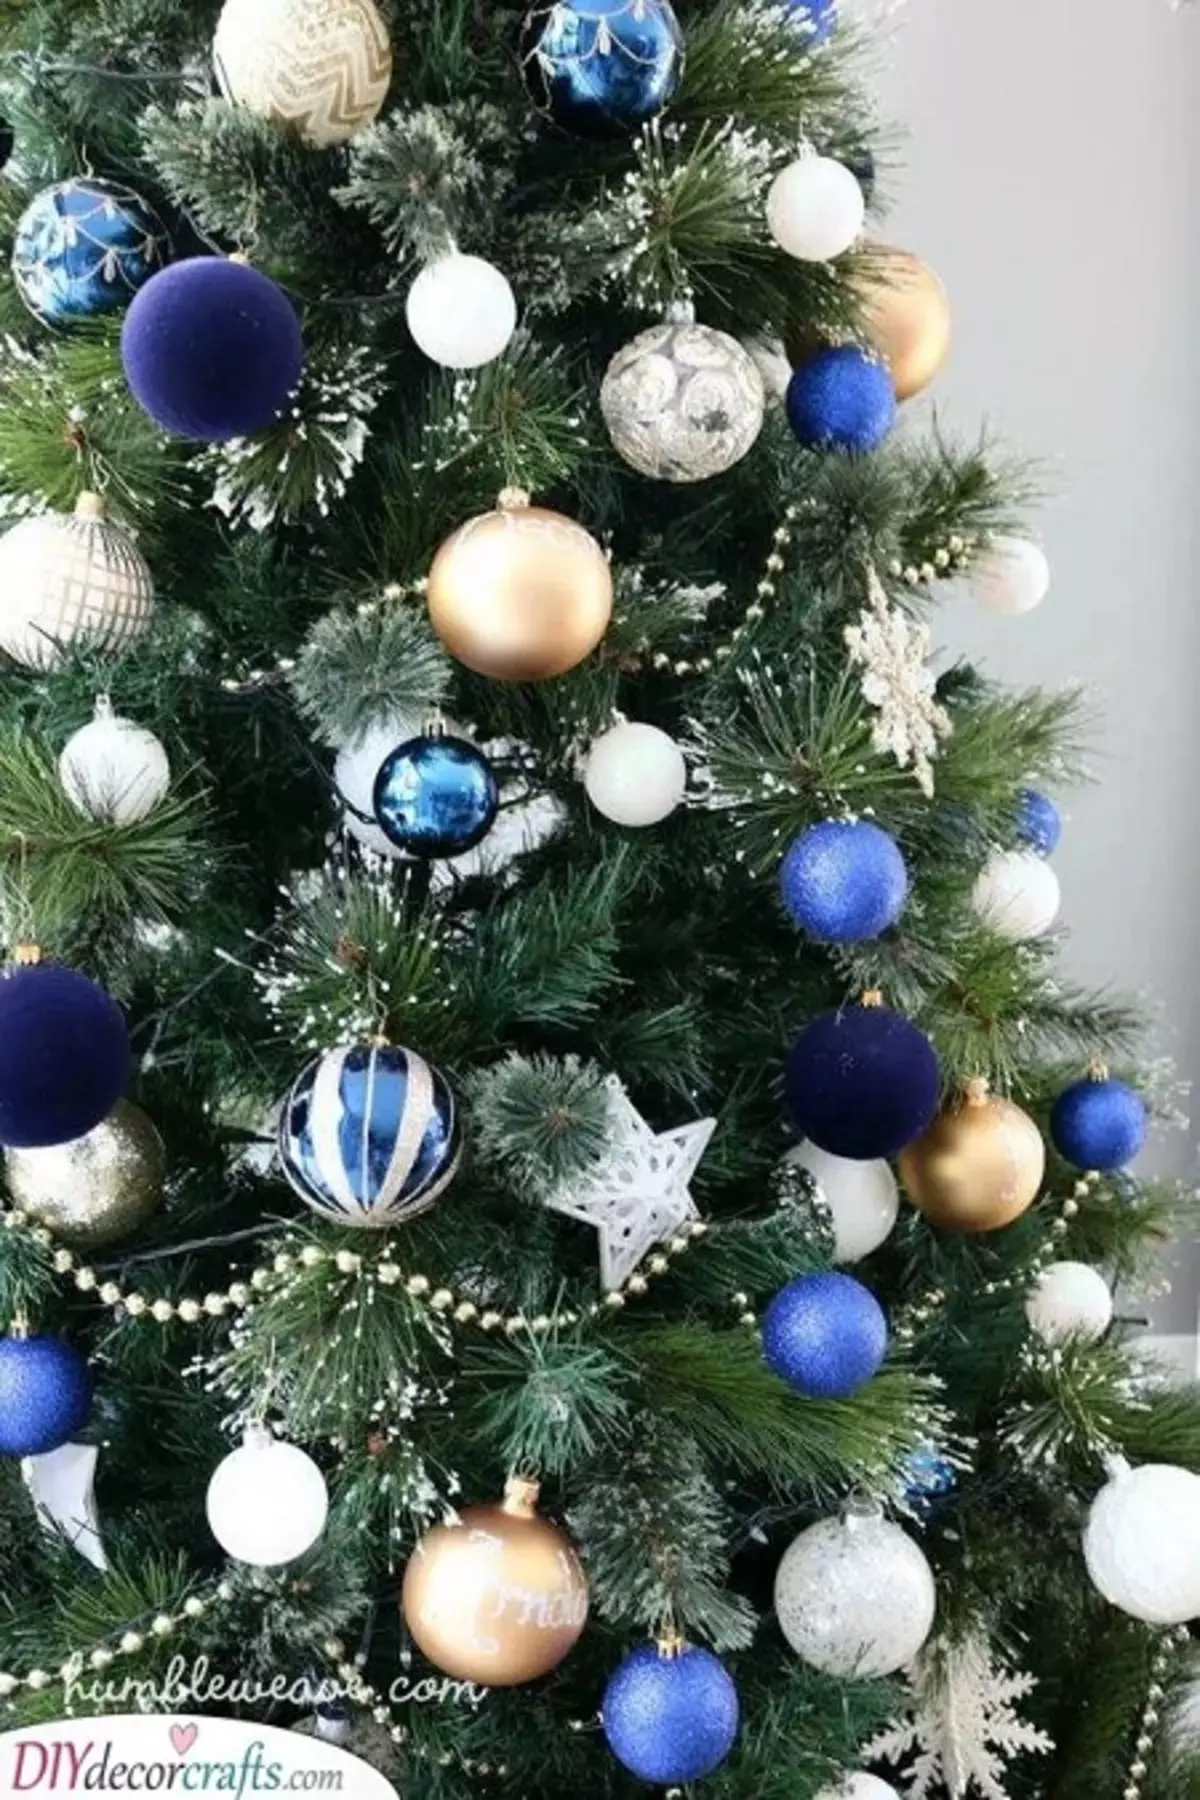 Làm thế nào để trang trí cây Giáng sinh màu xanh lam? 30 ảnh Làm thế nào để ăn mặc với những quả bóng và các trang trí khác trong tông màu xanh và bạc? 7627_5